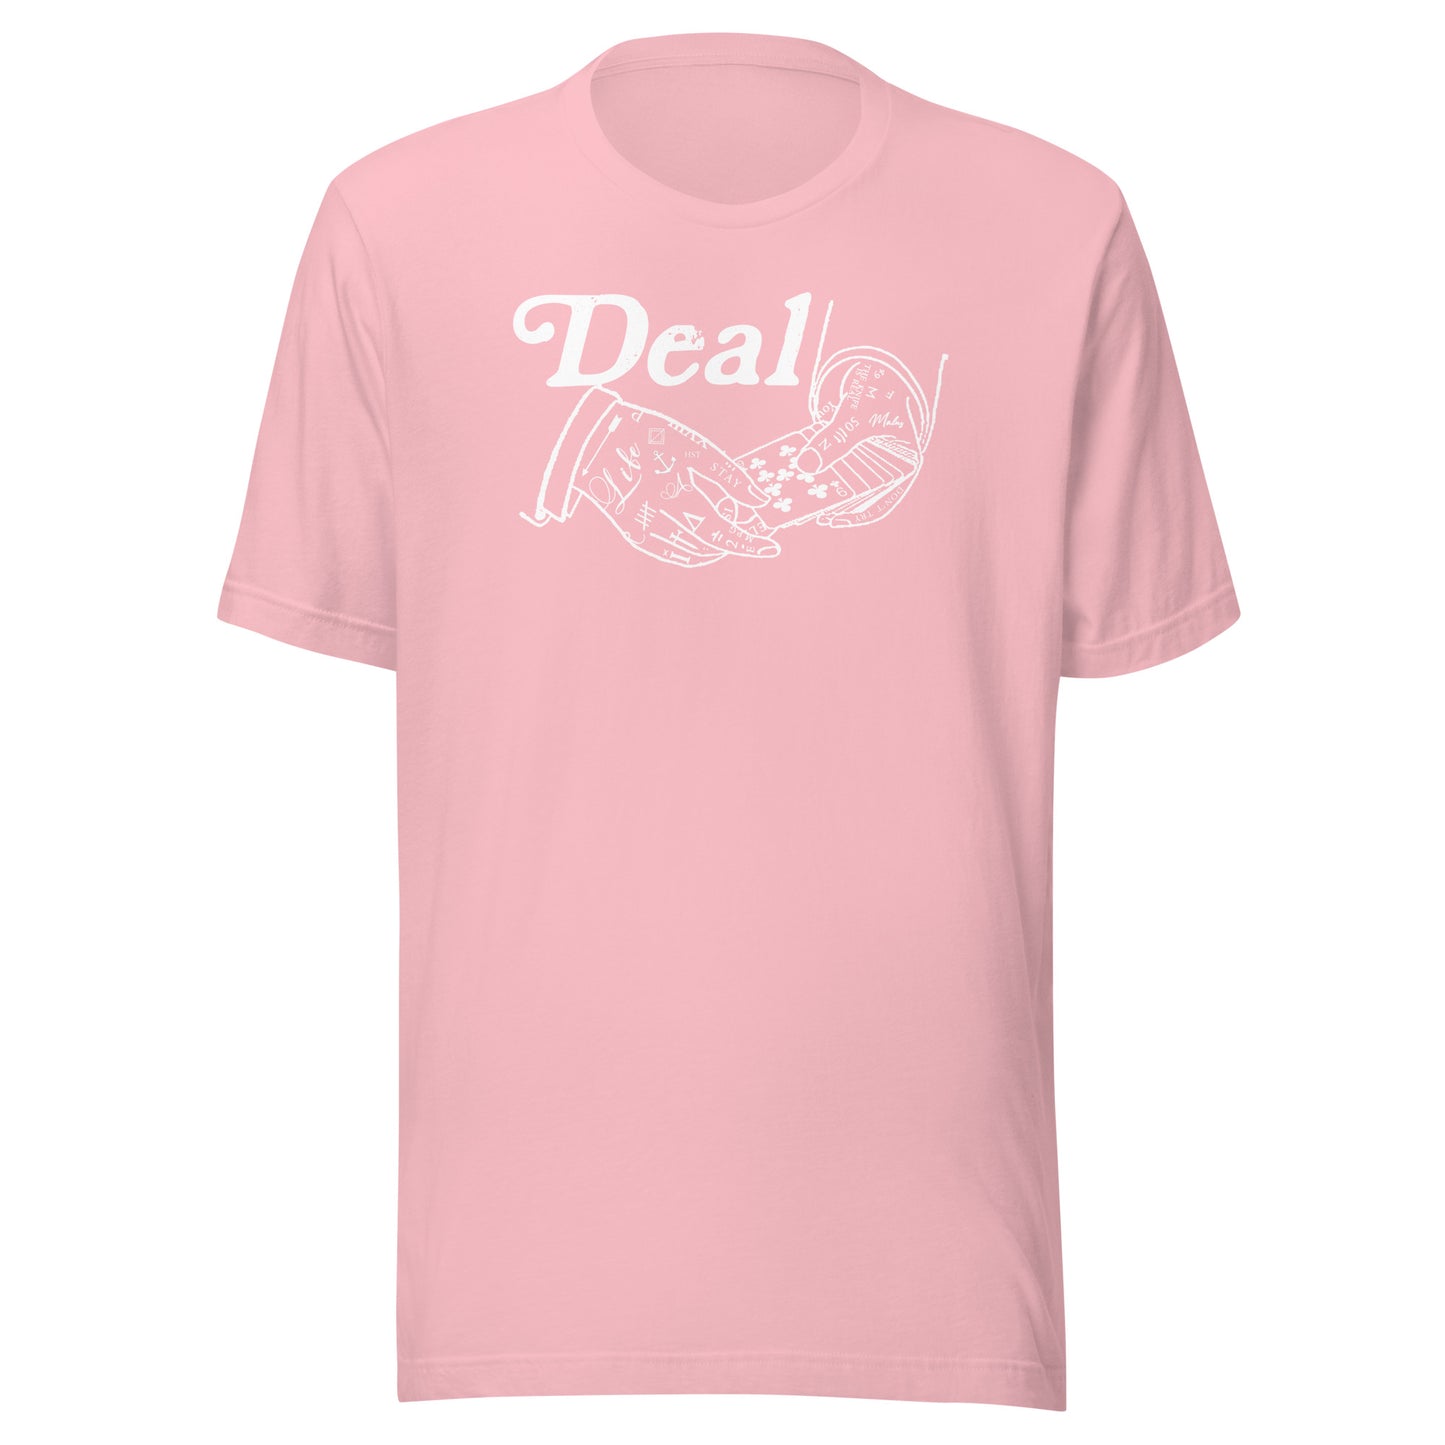 DEAL T-Shirt ( White Print )